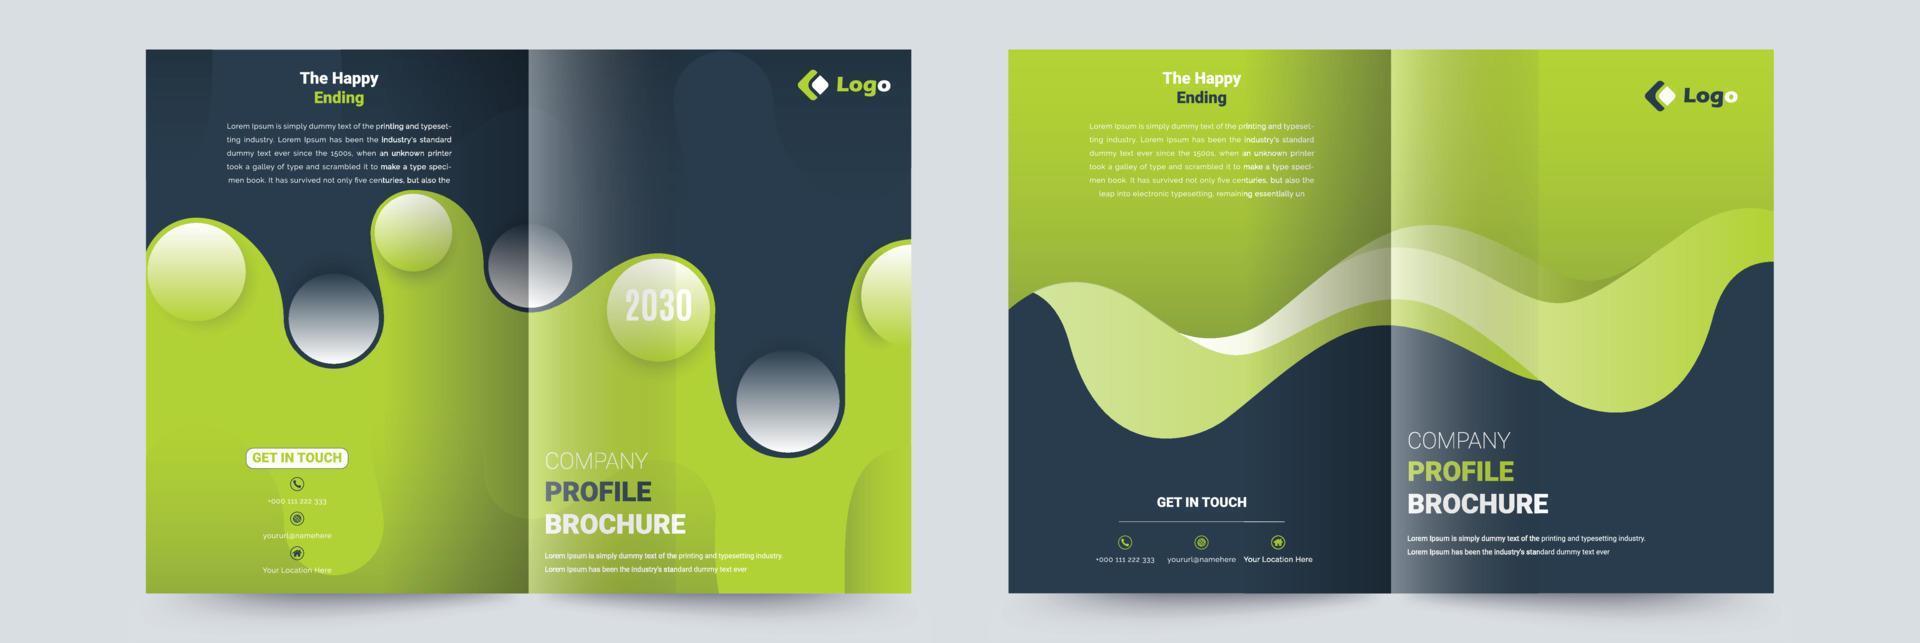 bedrijf profiel brochure Hoes ontwerp sjabloon bedreven voor multipurpose projecten vector